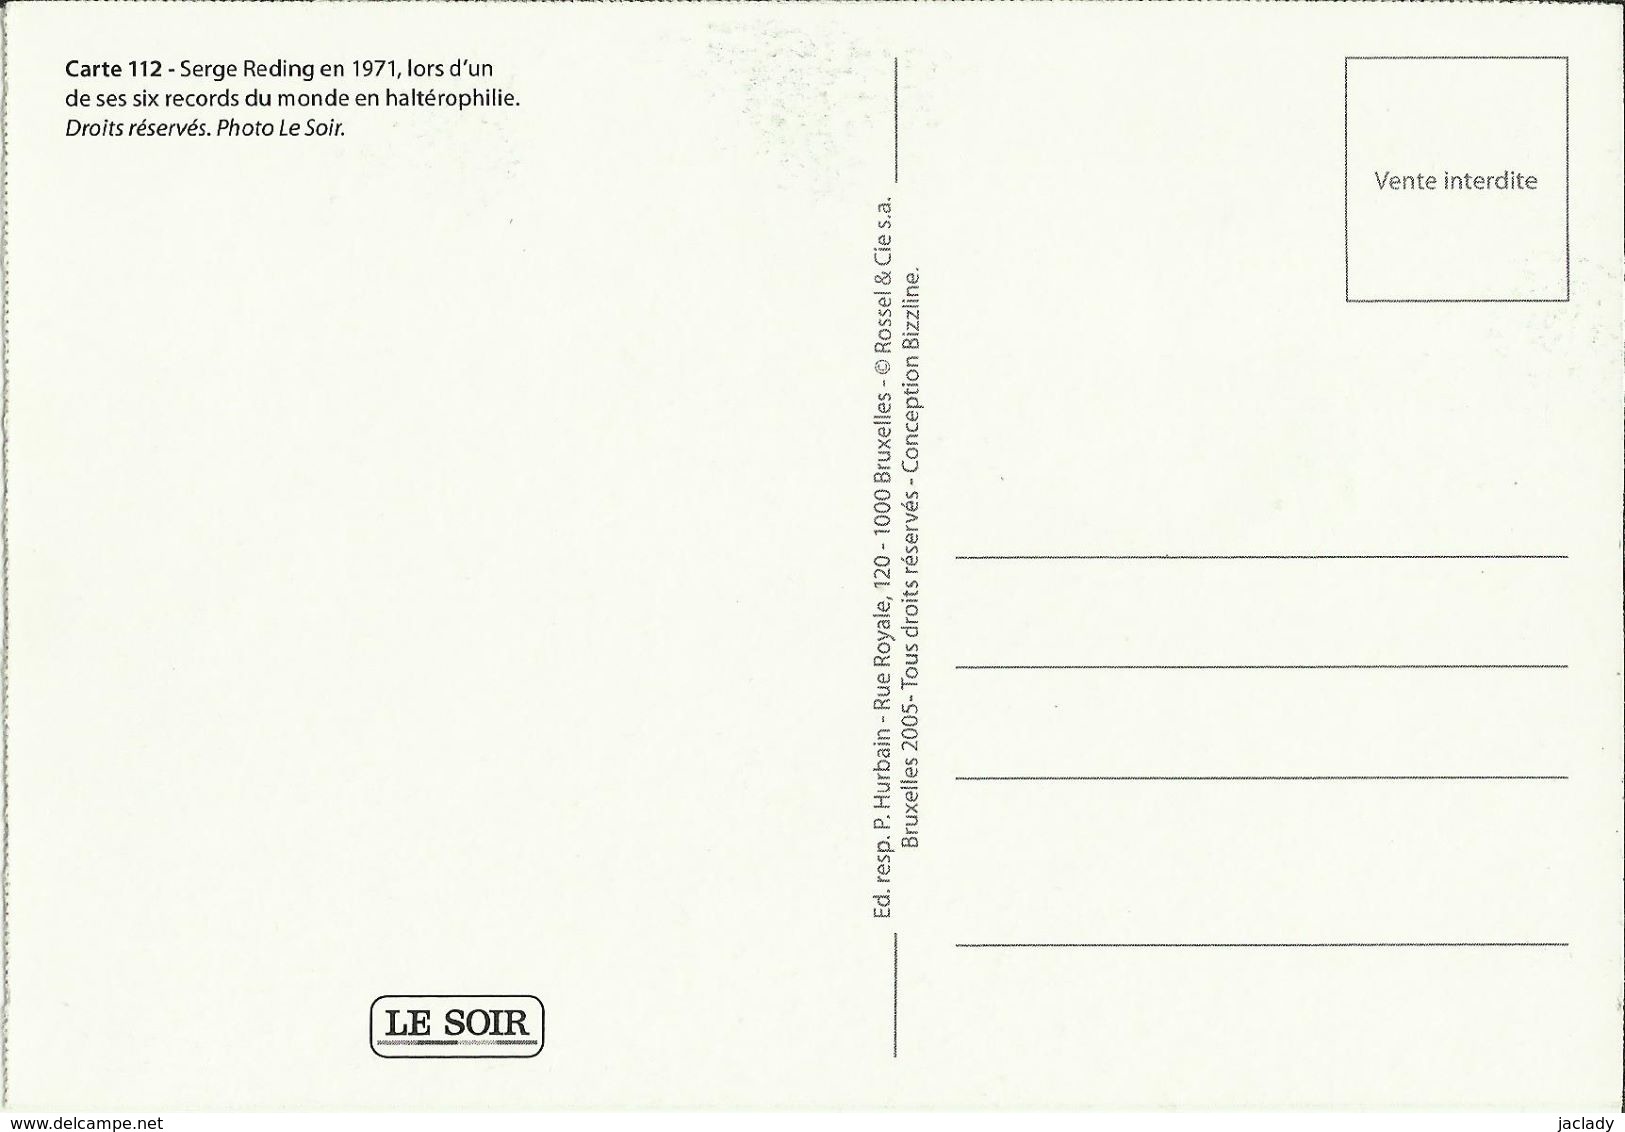 BELGIQUE - Carte N° 112 Du SOIR -- Serge Reding En 1971, Lors D'un De Ses 6 Records Du Monde En Haltérophilie. - Haltérophilie